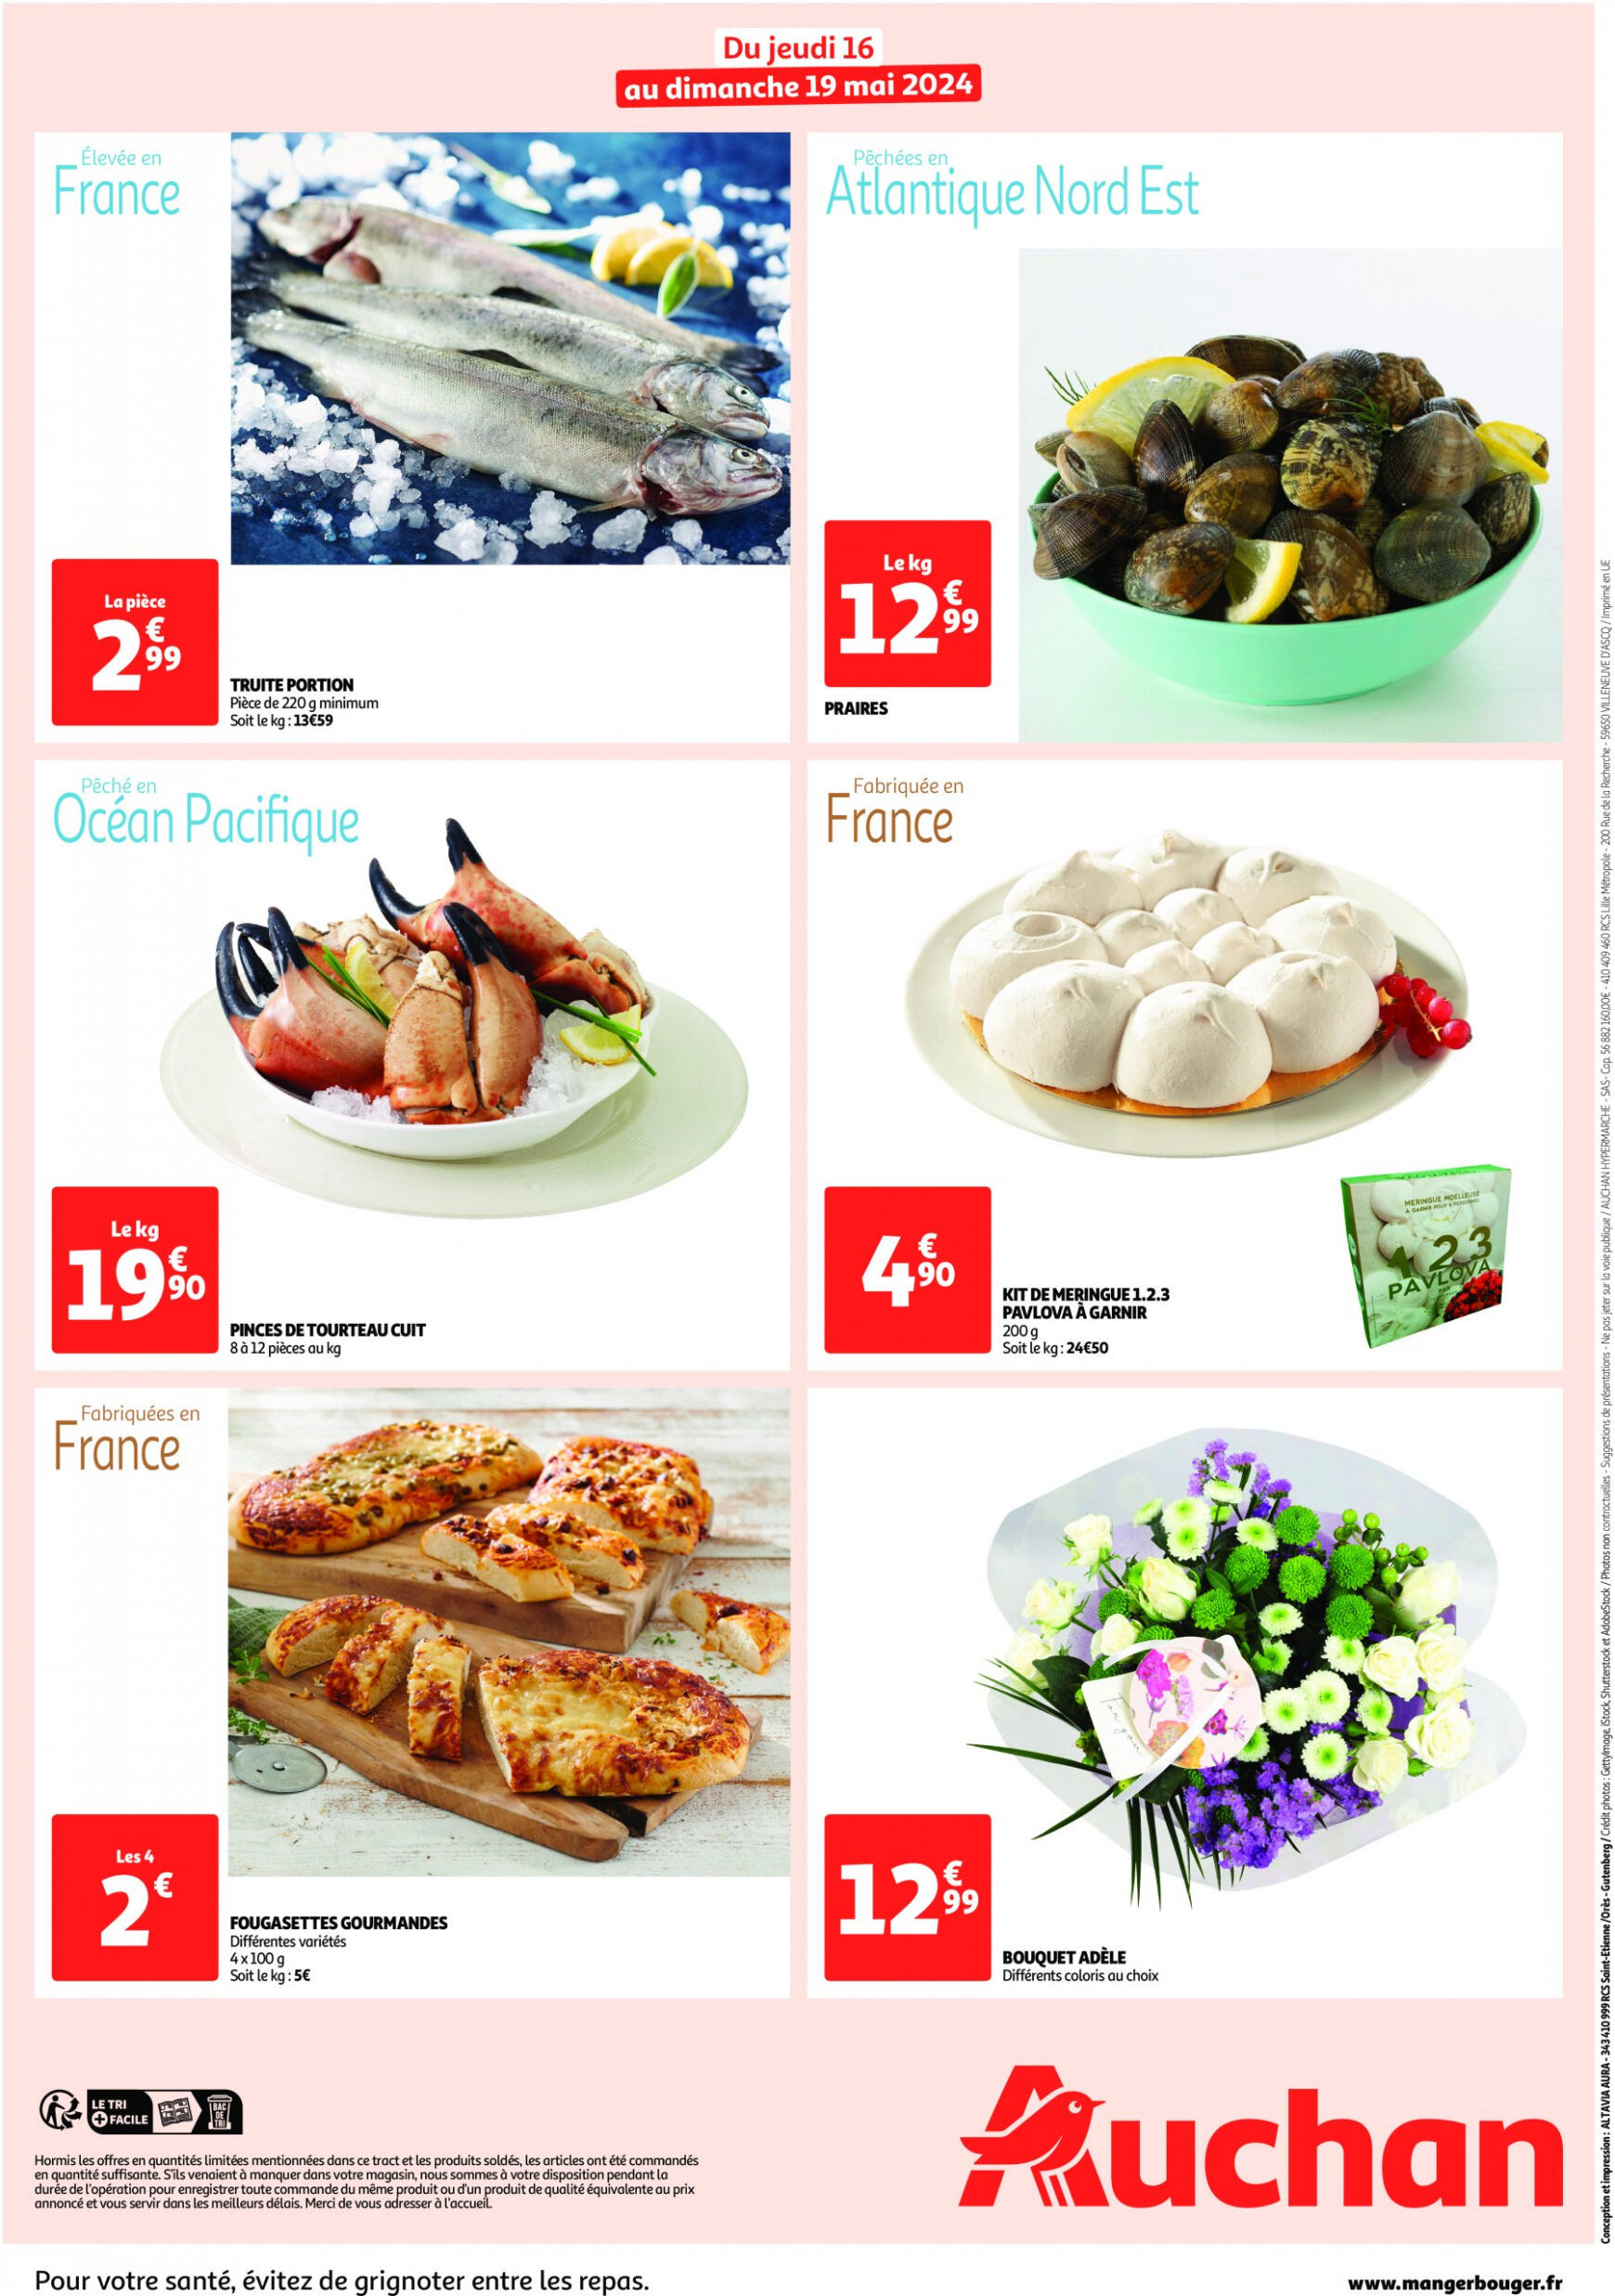 auchan - Auchan - Les bons plans du week-end dans votre hyper ! folder huidig 16.05. - 19.05. - page: 2